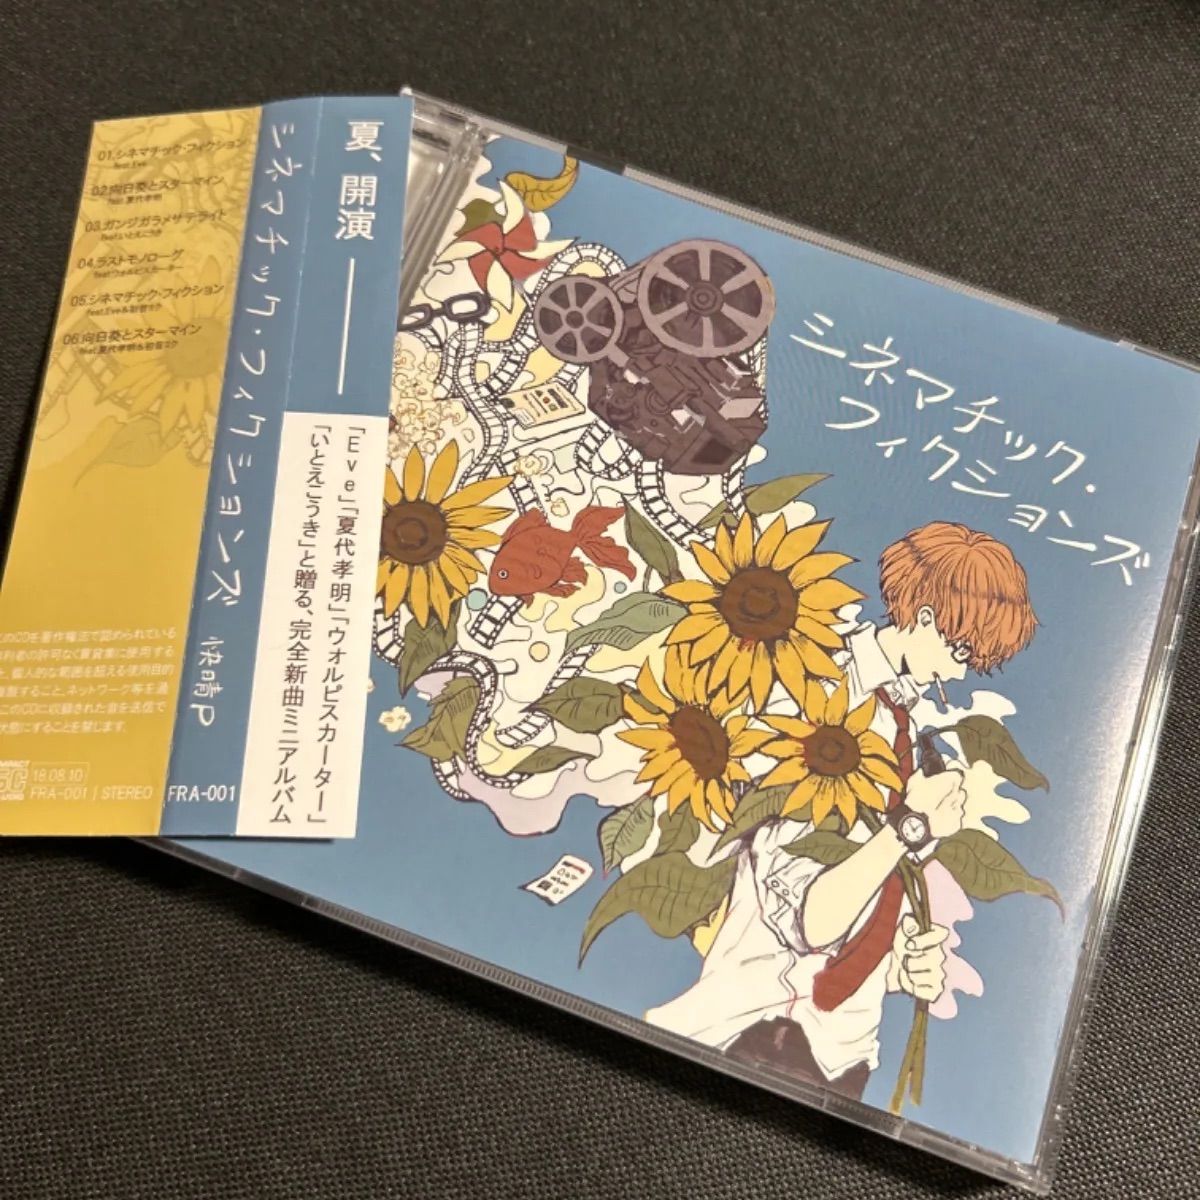 S2930) シネマチック・フィクションズ 快晴P CD シネマチック 